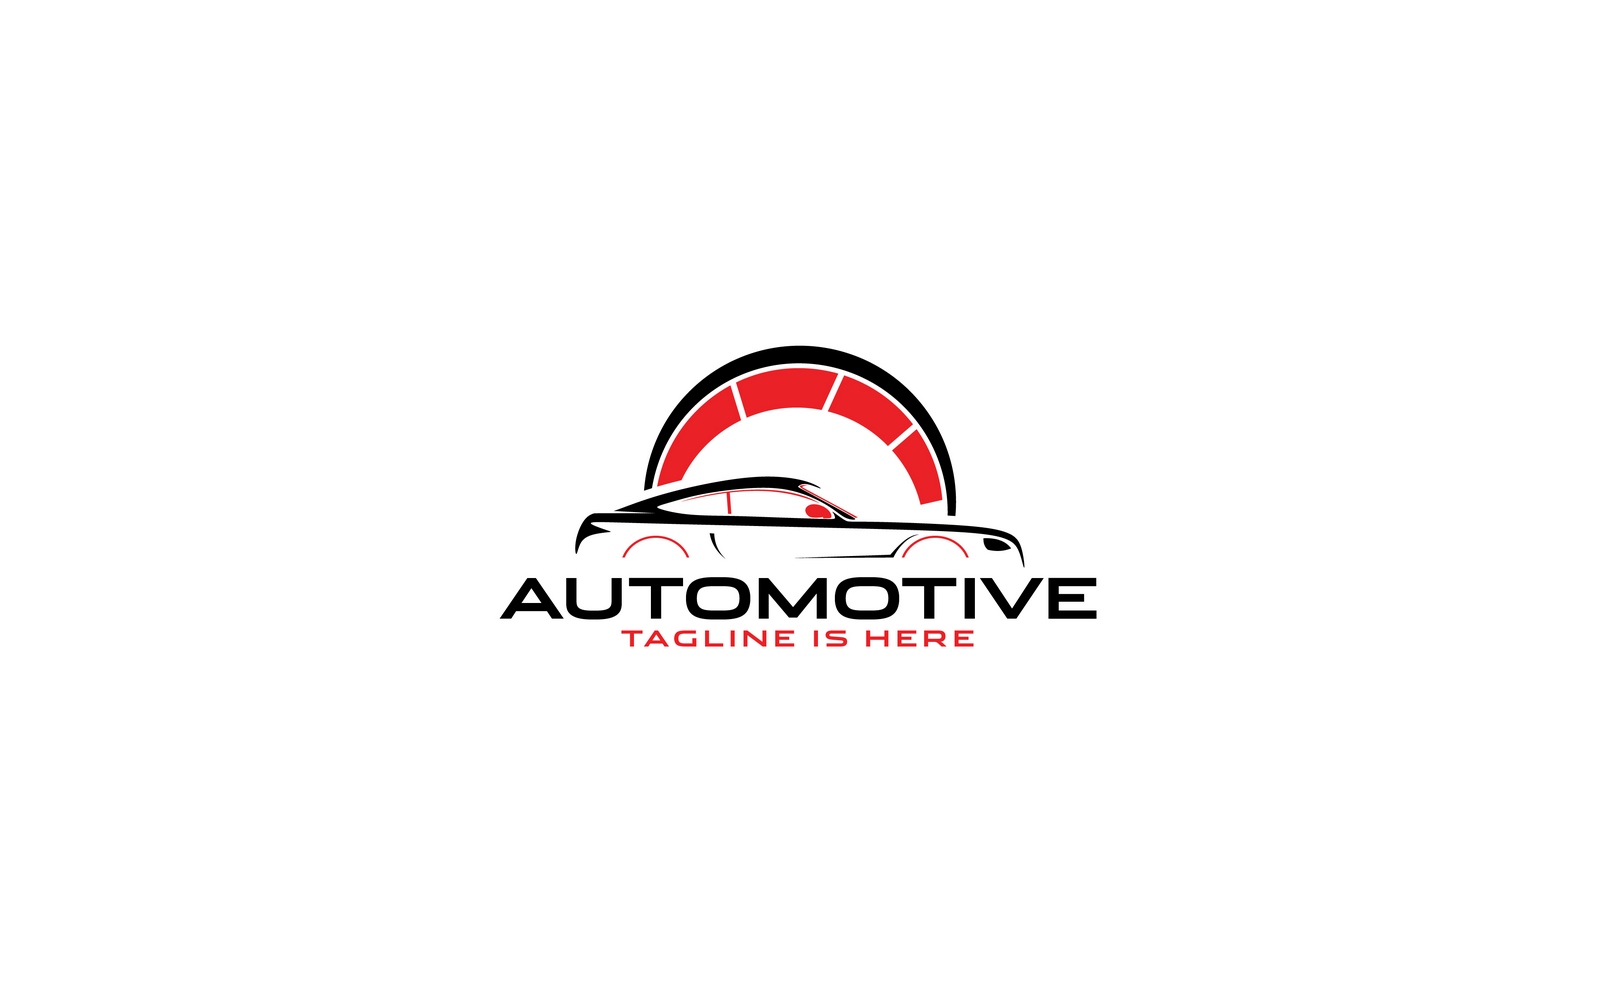 Automotive Car Logo Template V2